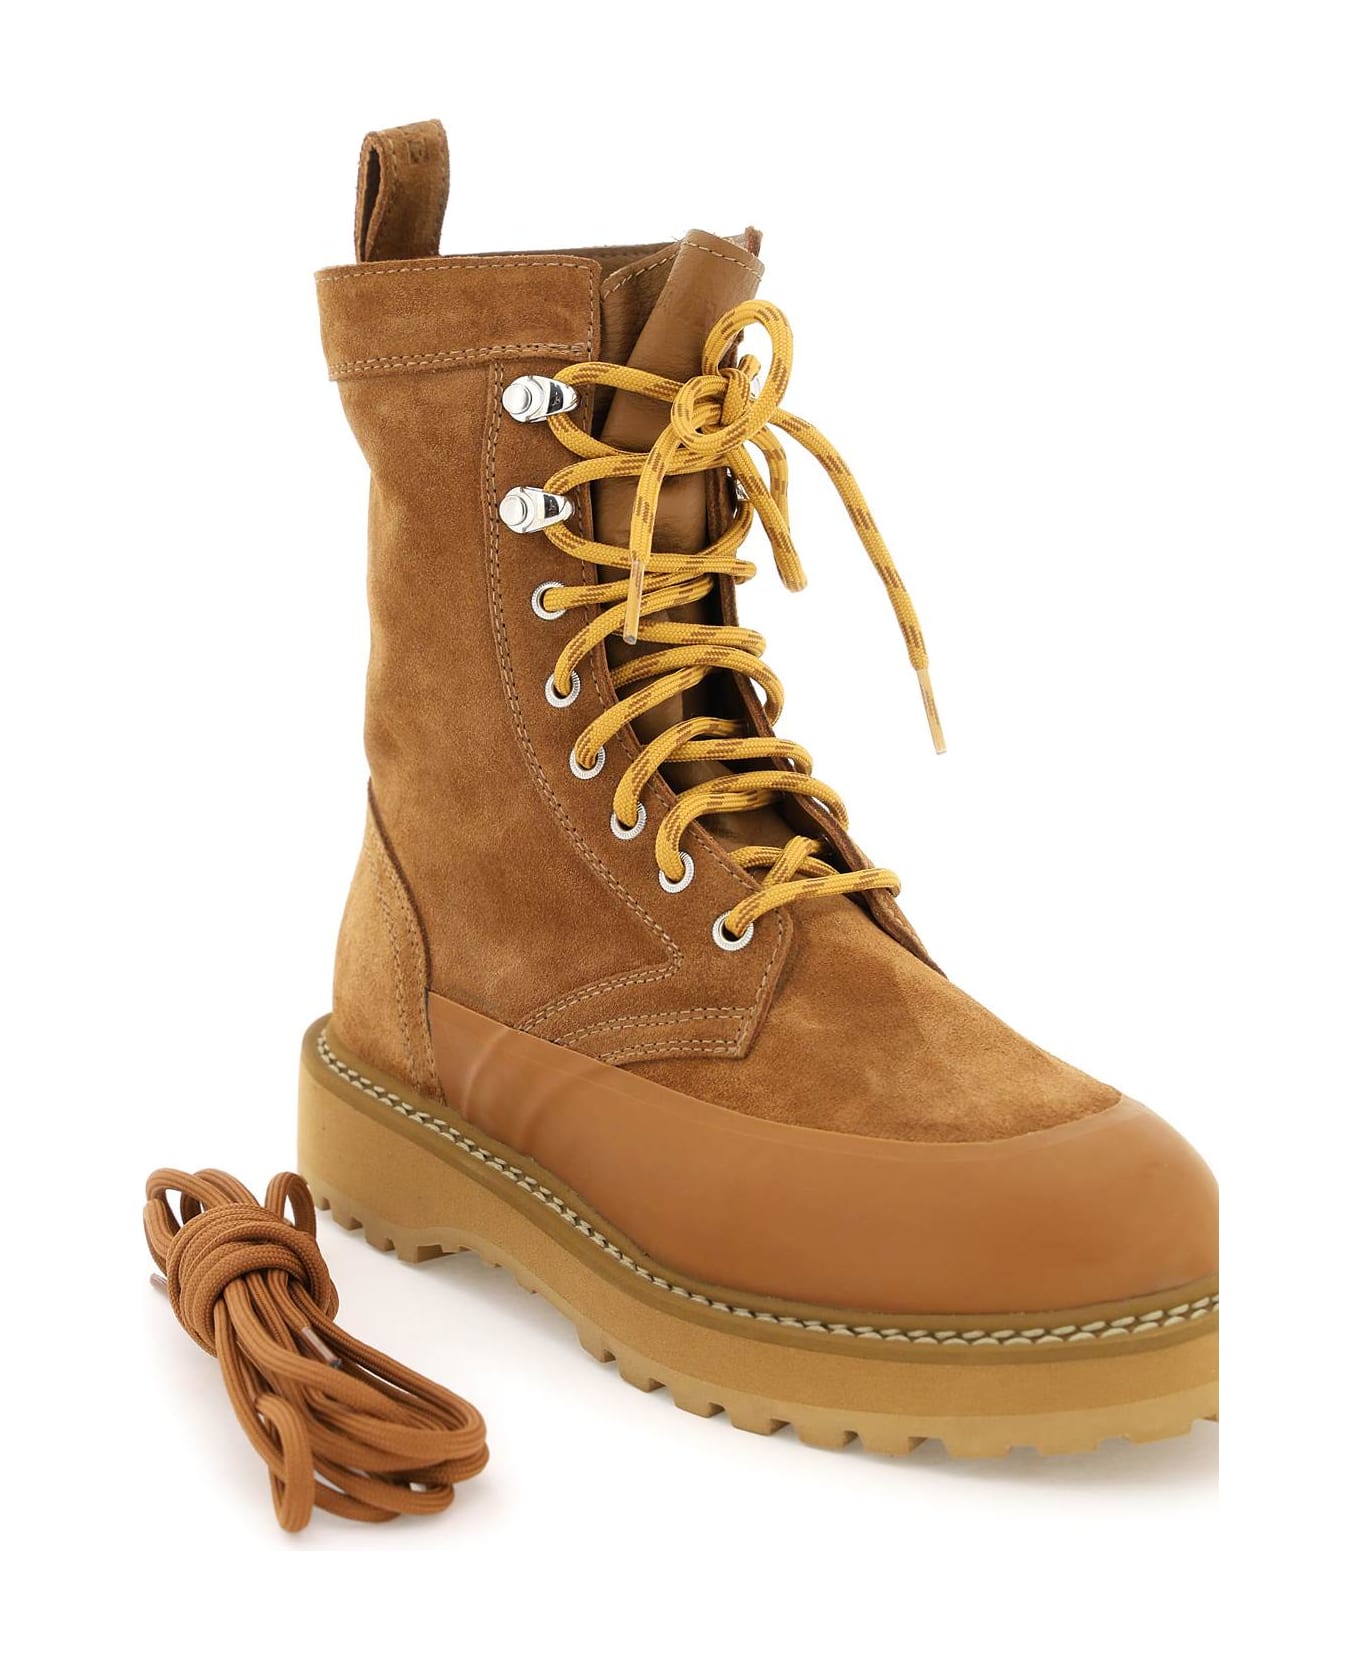 Diemme 'altivole Due' Suede Leather Ankle Boots - COGNAC (Brown)